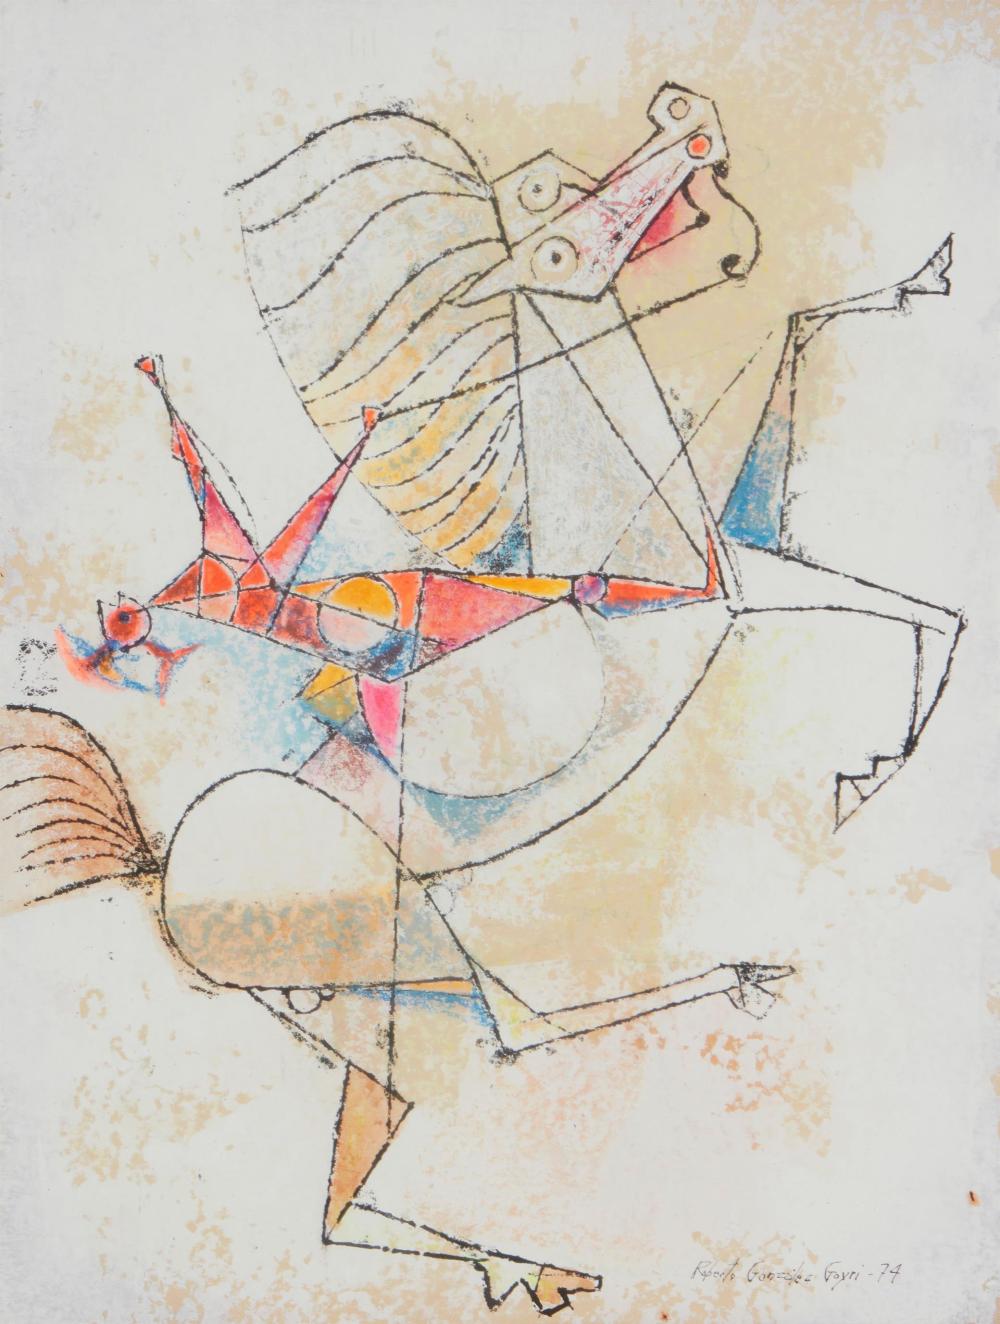 Roberto González Goyri "Man On A Bucking Horse"